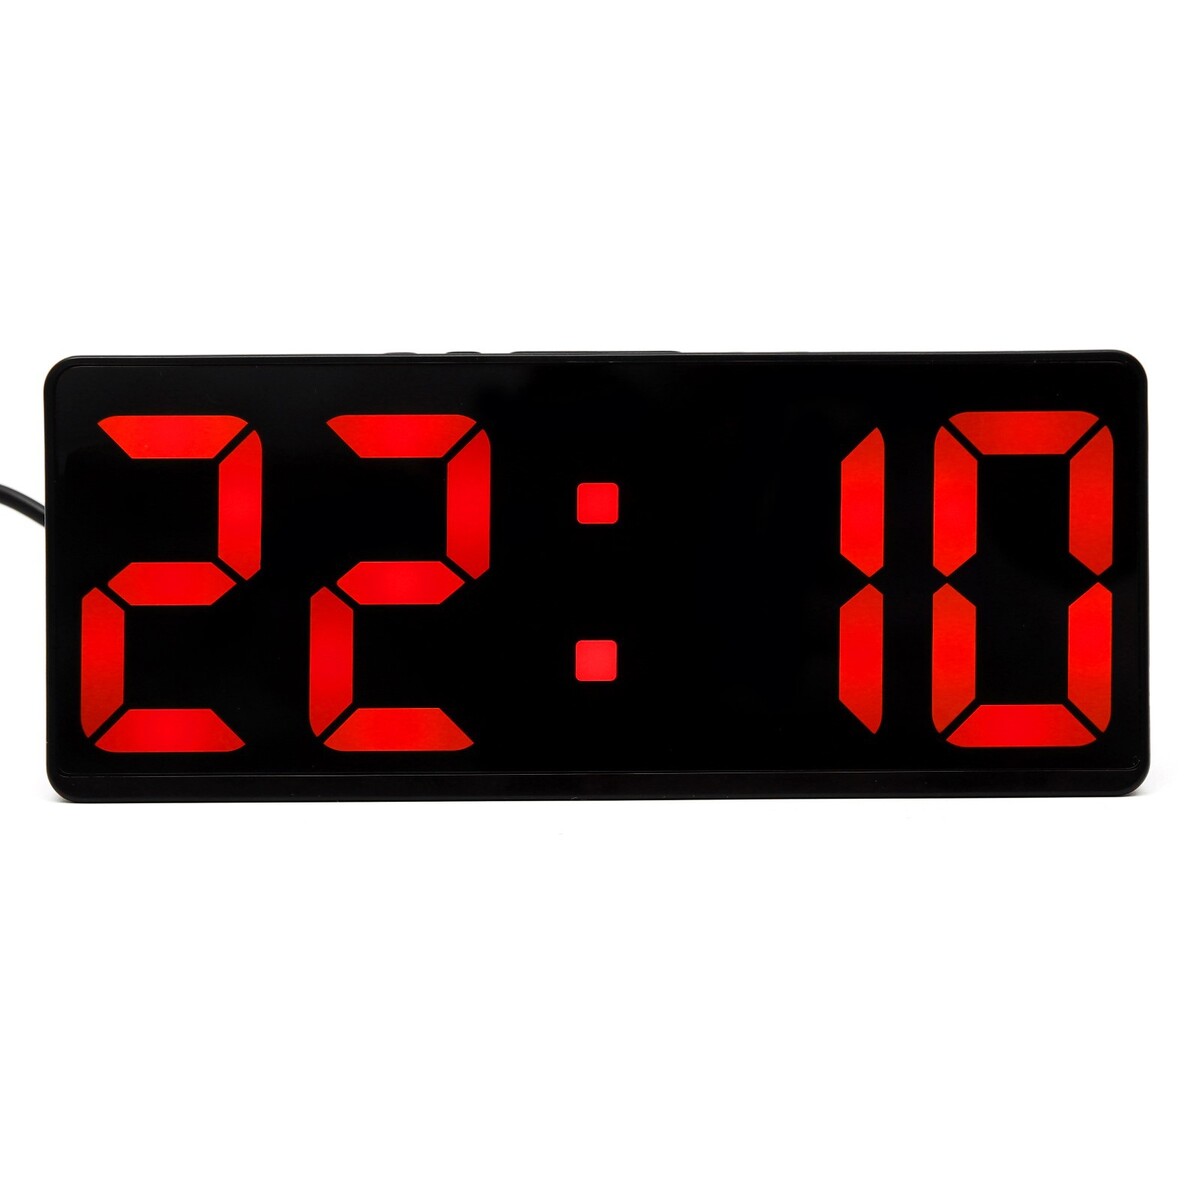 Часы - будильник электронные настольные с термометром, календарем, 15 х 6.3 см, ааа, usb часы органайзер электронные с будильником настольные с календарем секундомером 3ааа